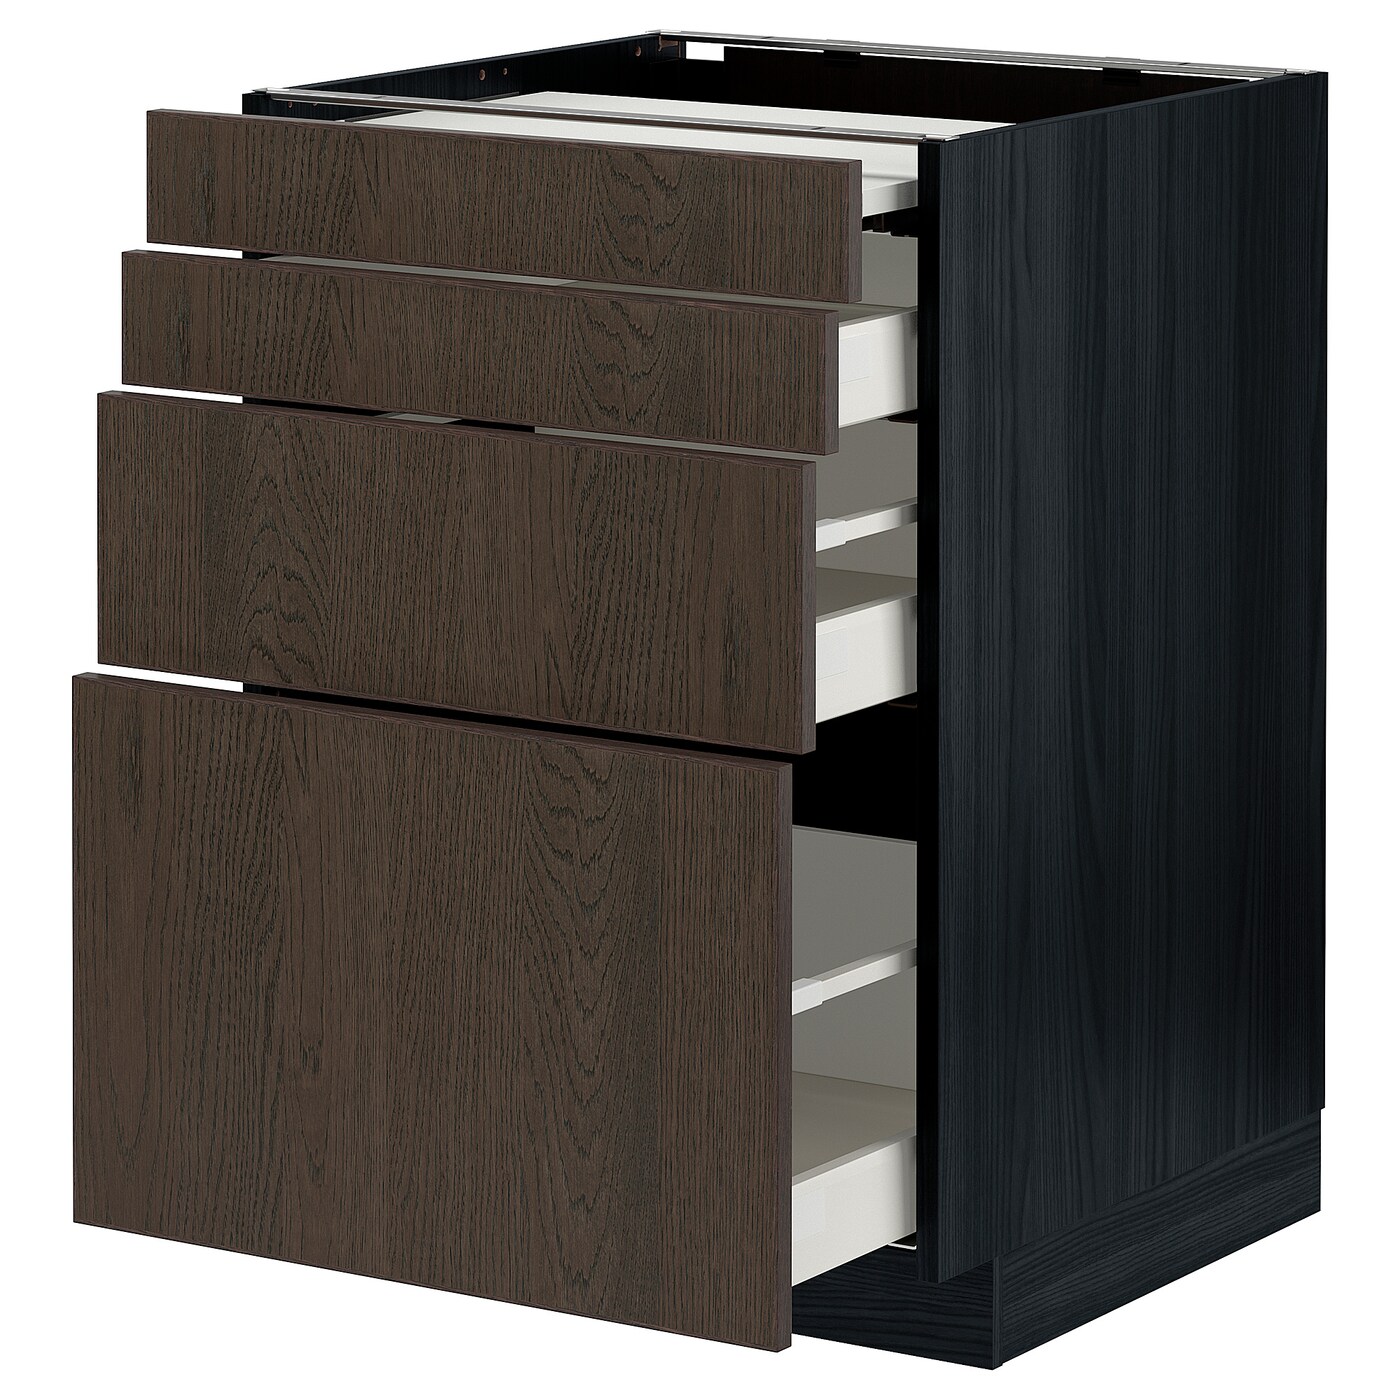 Напольный кухонный шкаф  - IKEA METOD MAXIMERA, 88x62x60см, черный/темно-коричневый, МЕТОД МАКСИМЕРА ИКЕА